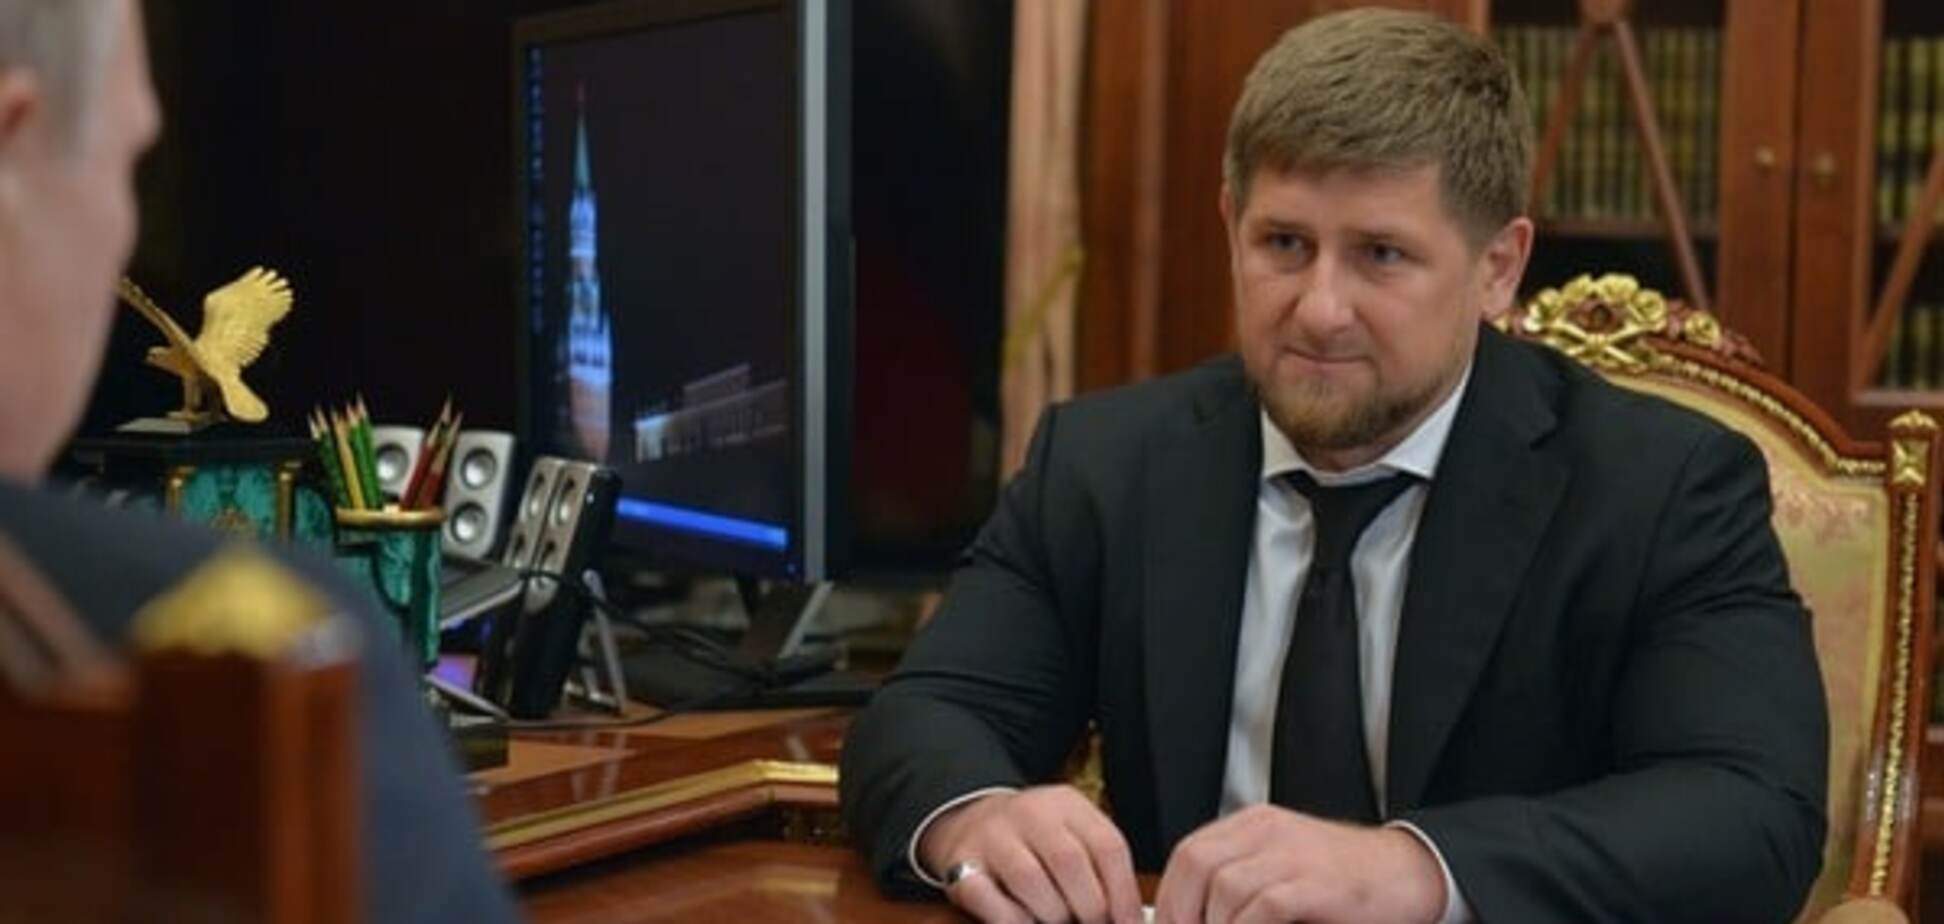 Российские СМИ уличили во лжи: на самом деле Кадырова ненавидят и готовы к революции